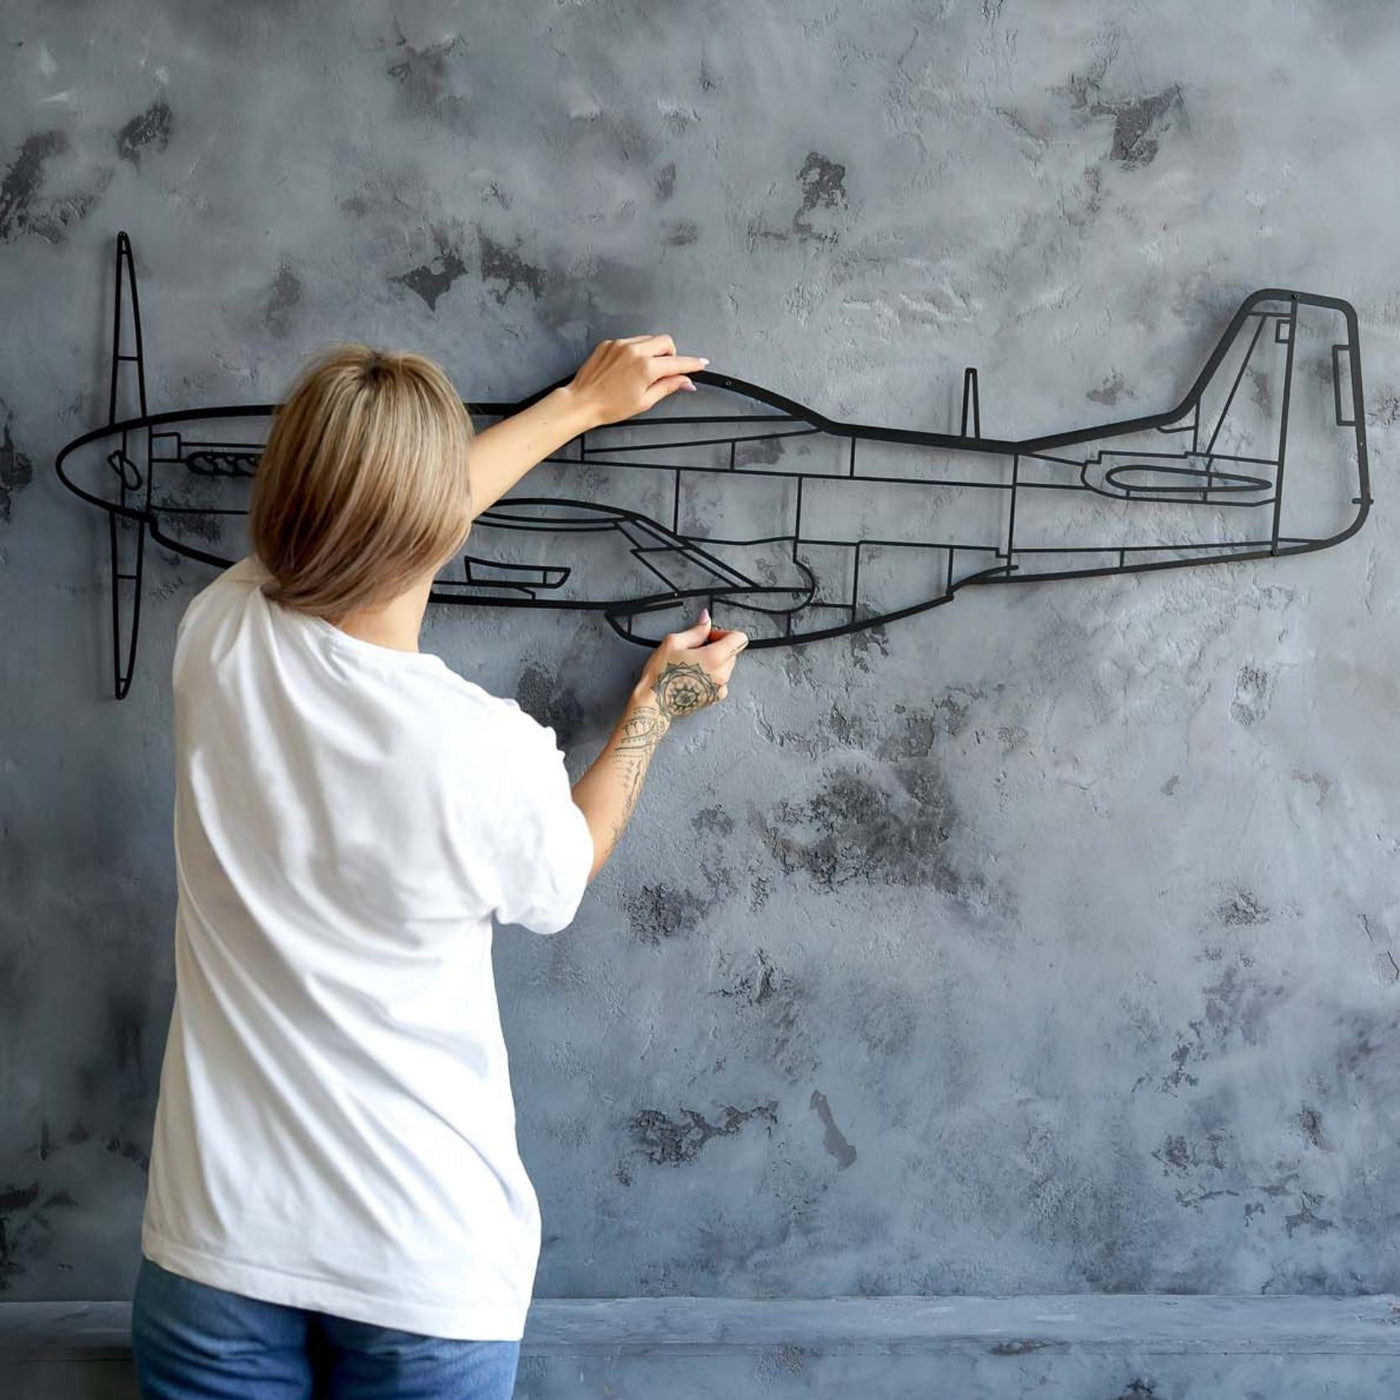 F-111 Aardvark Silhouette Metal Wall Art